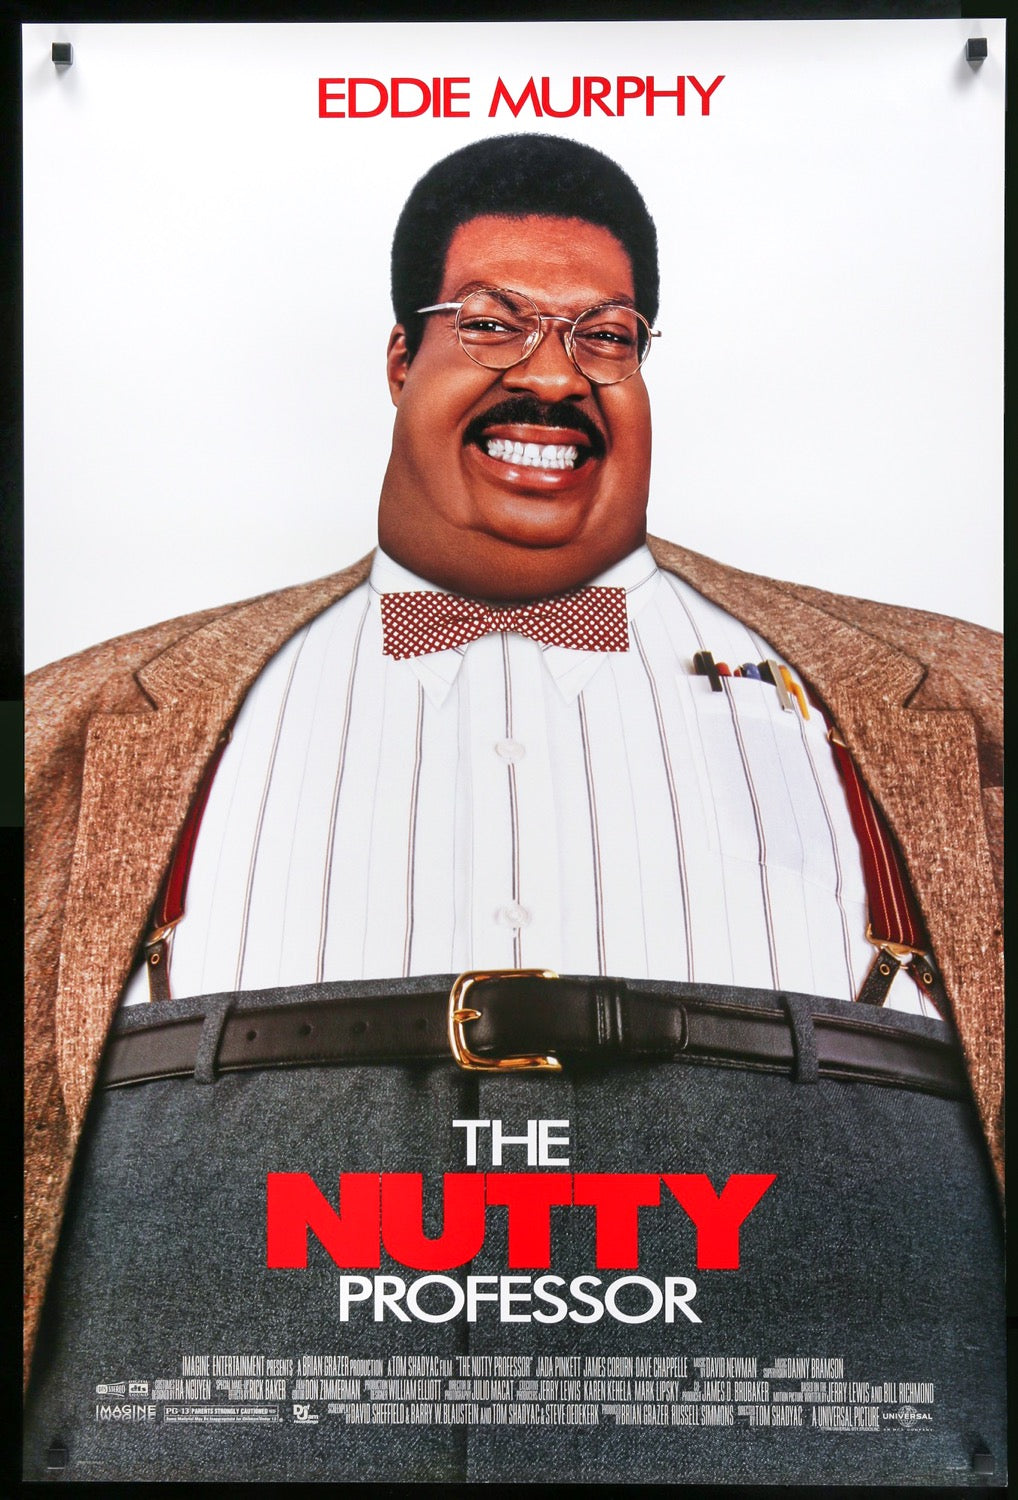 Nutty Professor (1996) original movie poster for sale at Original Film Art